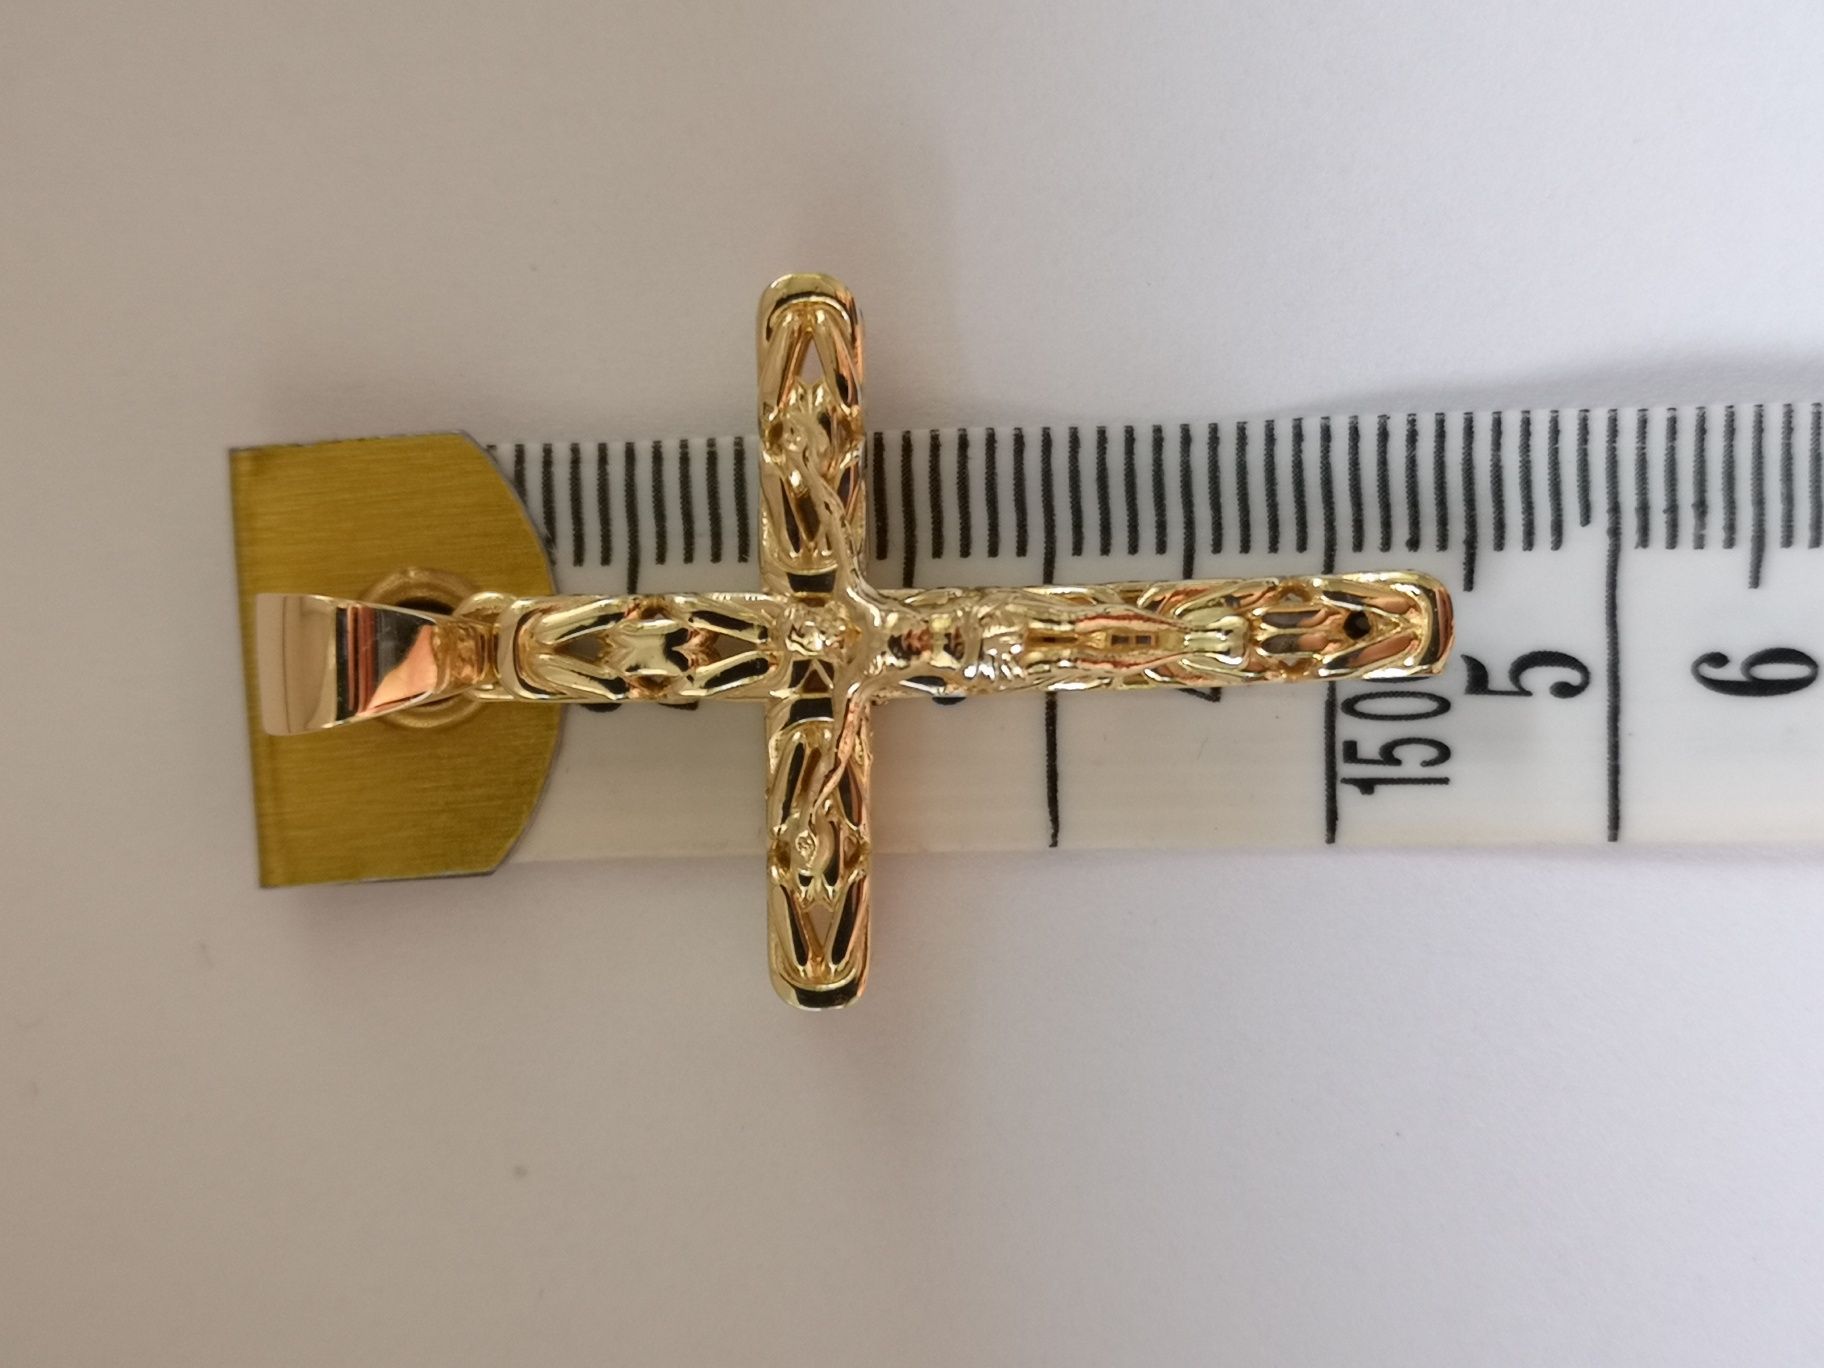 Złoty Krzyżyk zawieszka królewski wzór piękny wyrób 585 Kraków krzyż